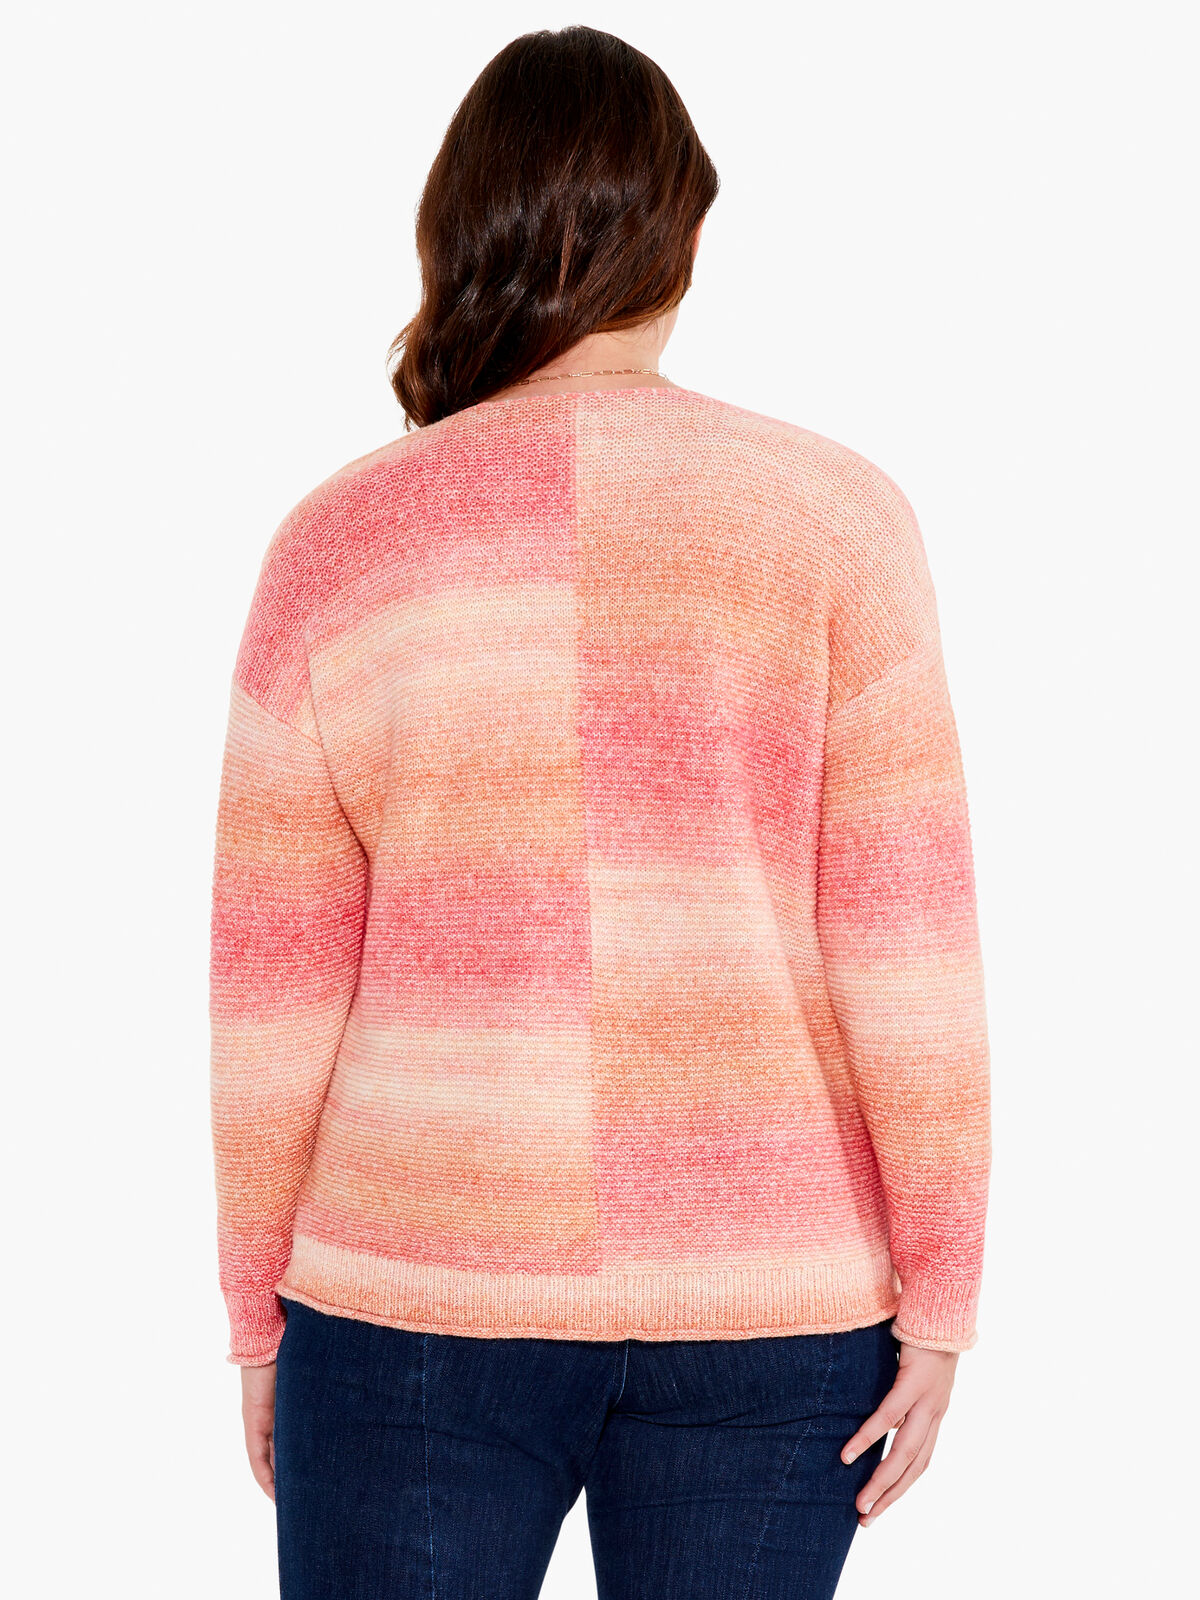 Sunset Mix Sweater